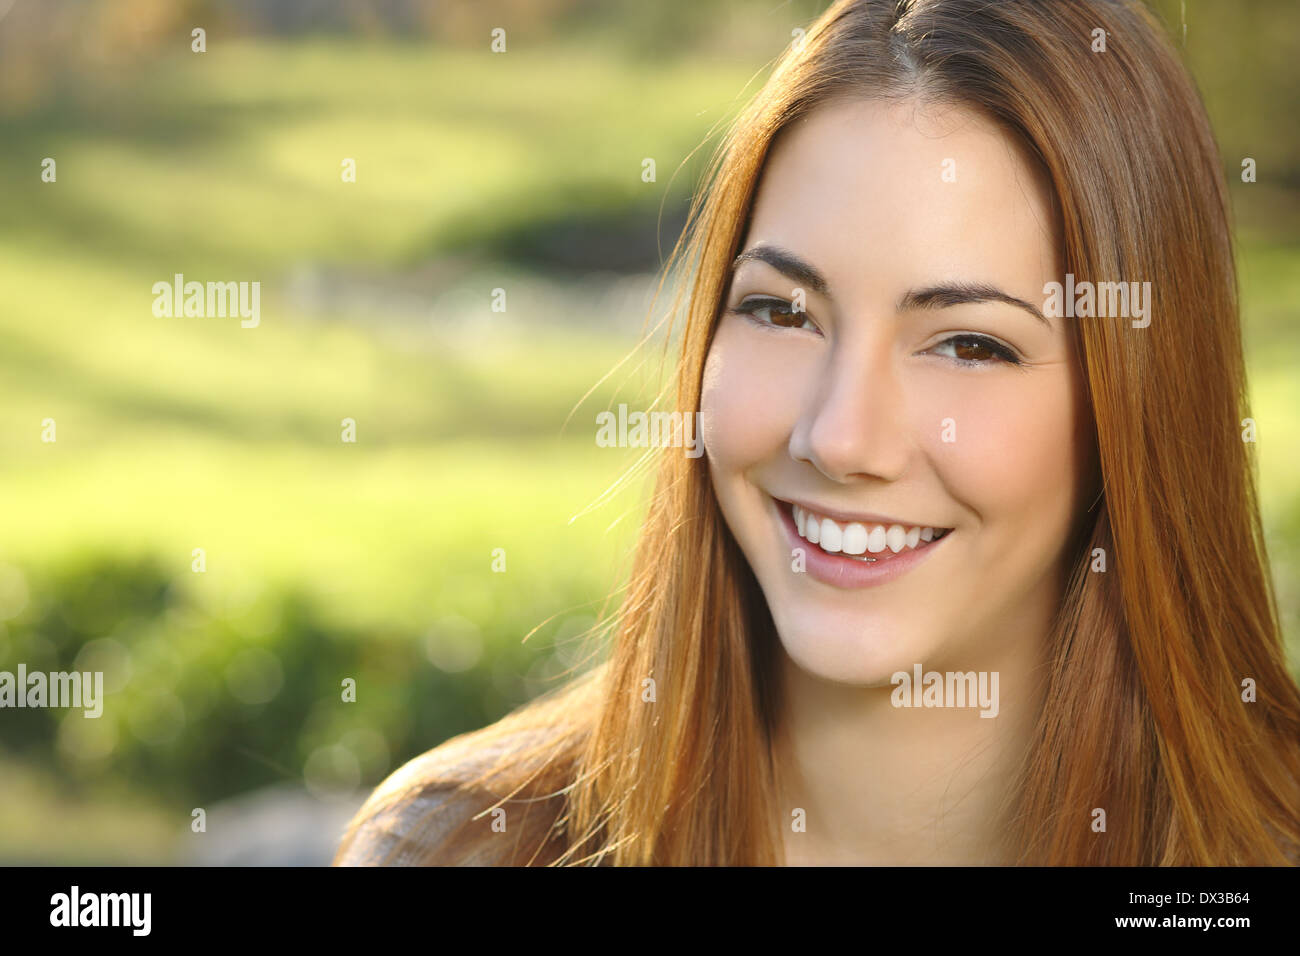 Ritratto di una donna white smile dental care in un parco con un calore verde sullo sfondo Foto Stock